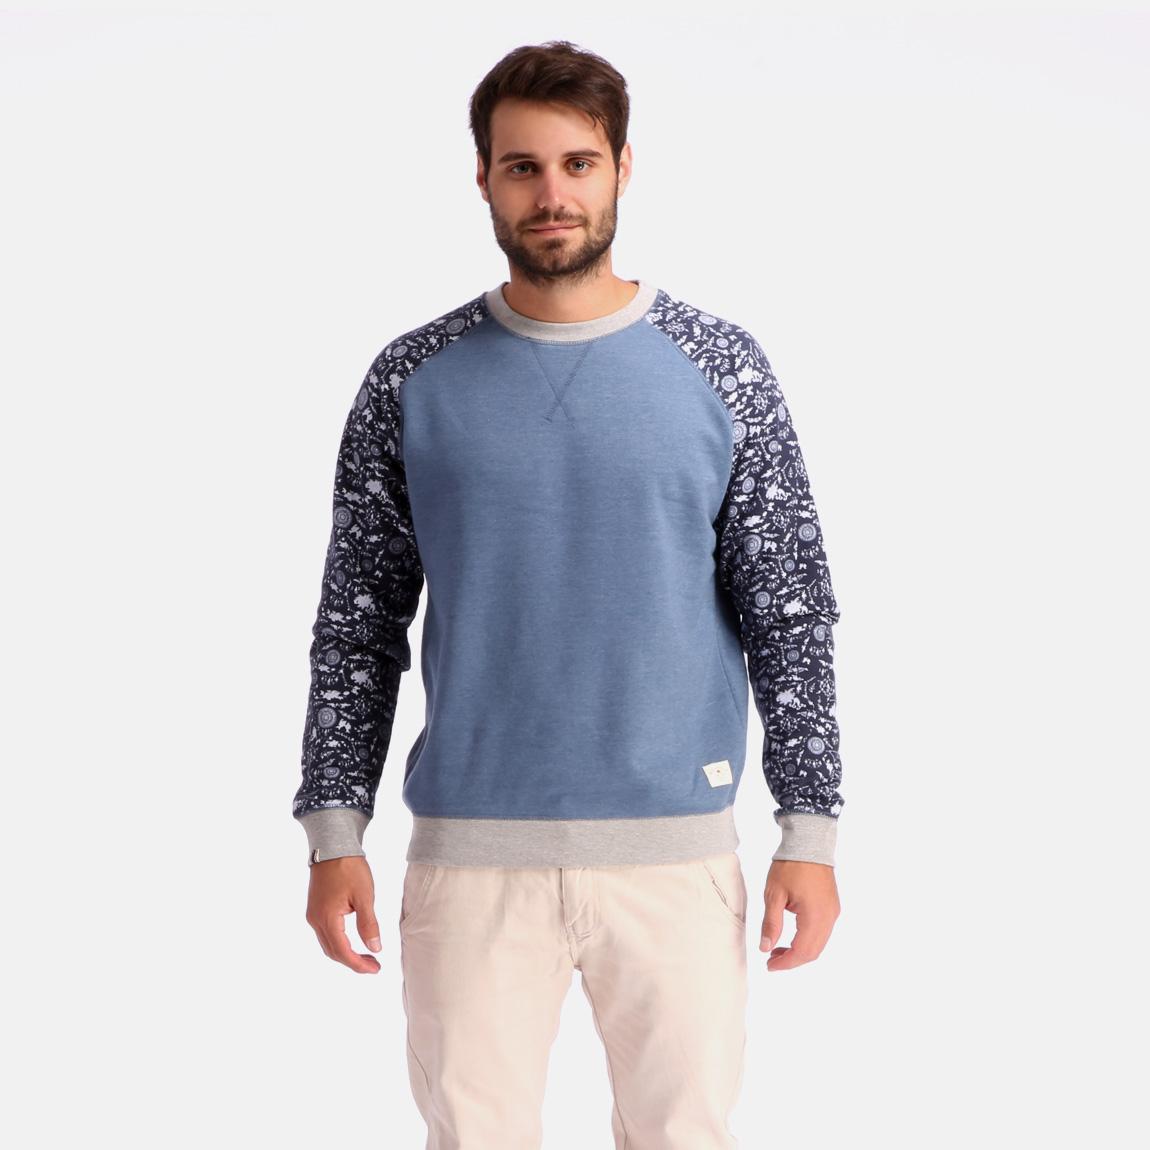 B Jeremy Sweatshirt - Stone Blue Bellfield Knitwear | Superbalist.com